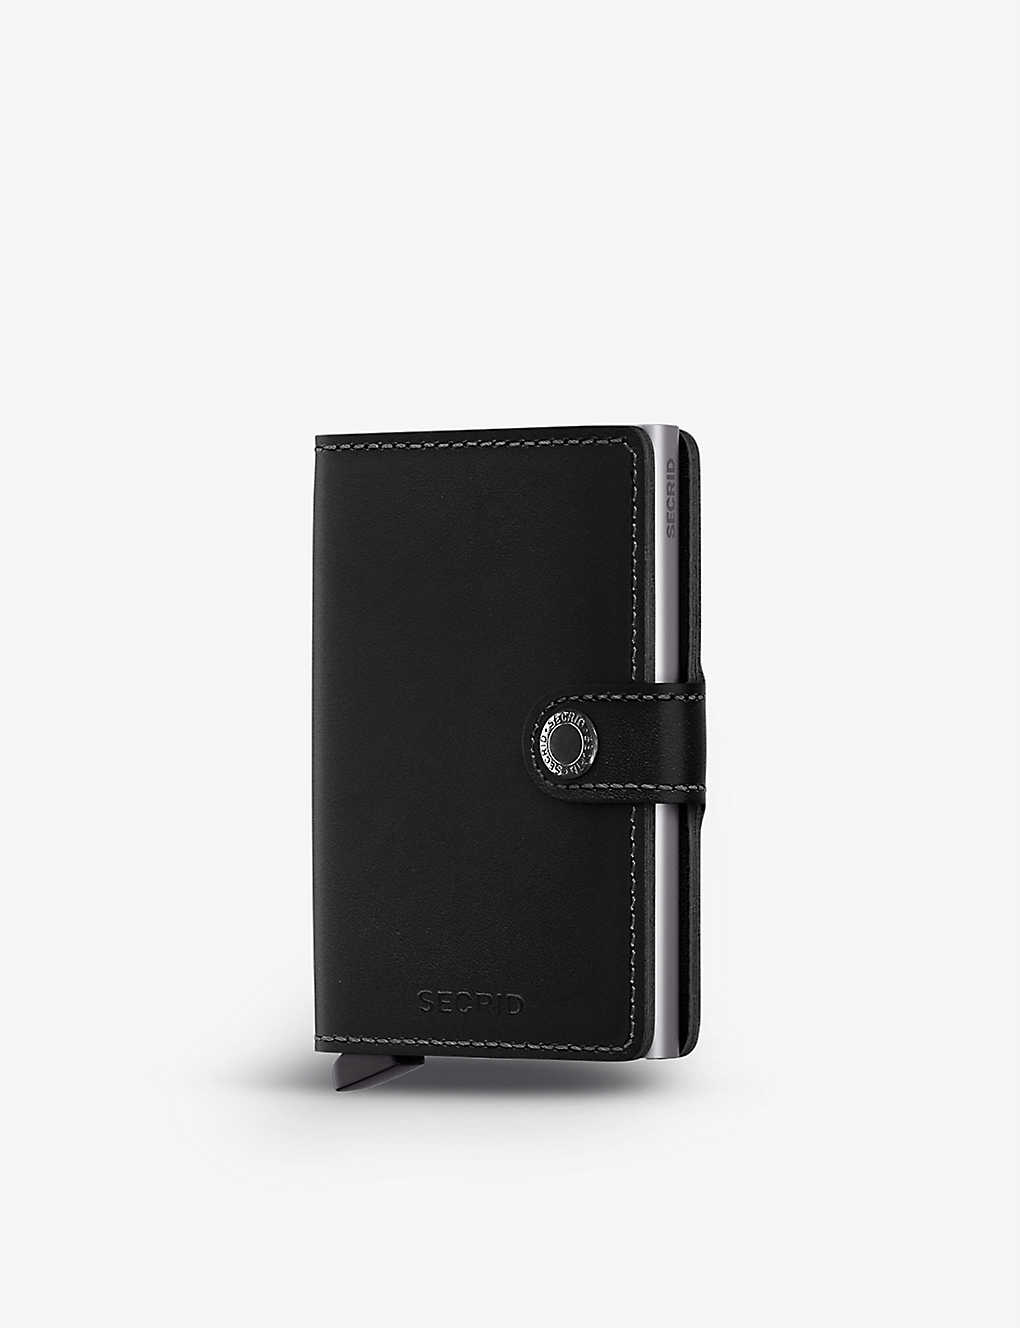 Secrid Miniwallet Original Leather And Aluminium Cardholder In Black